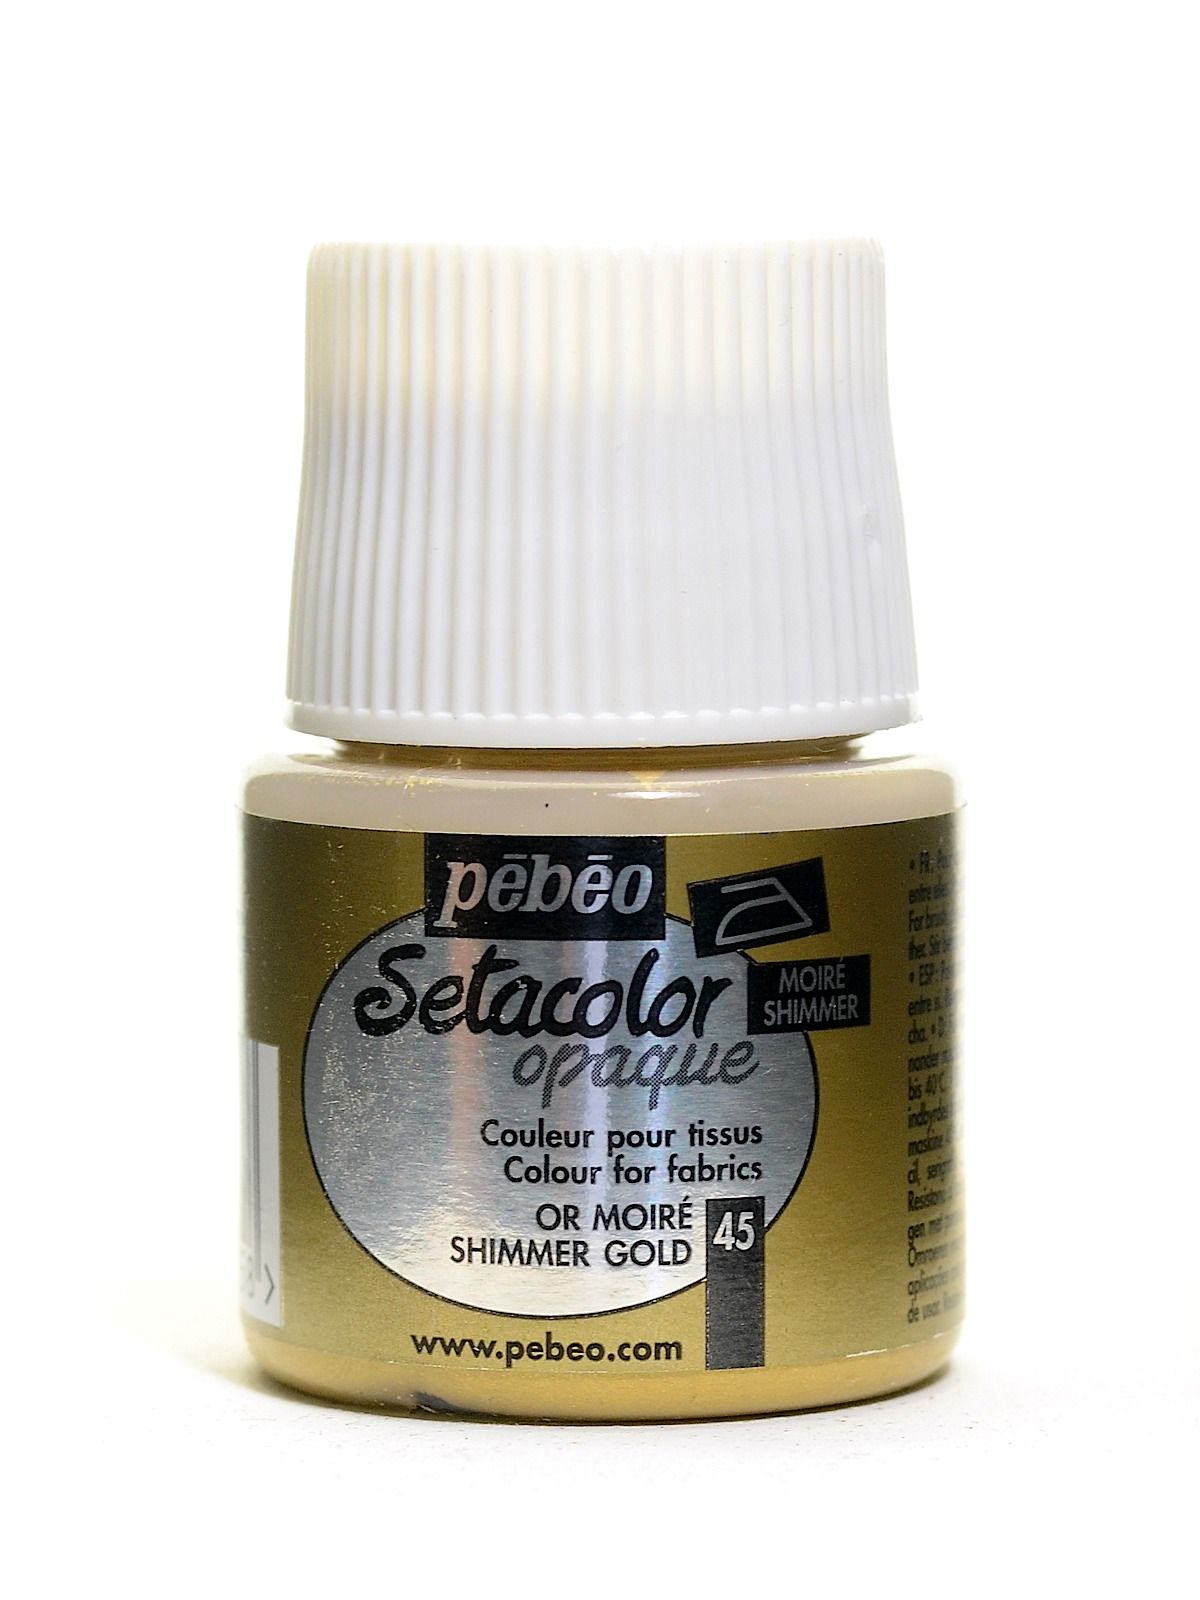 Pébéo Setacolor Fabric Paint - Opaque Shimmer Gold - 45 mL Bottle